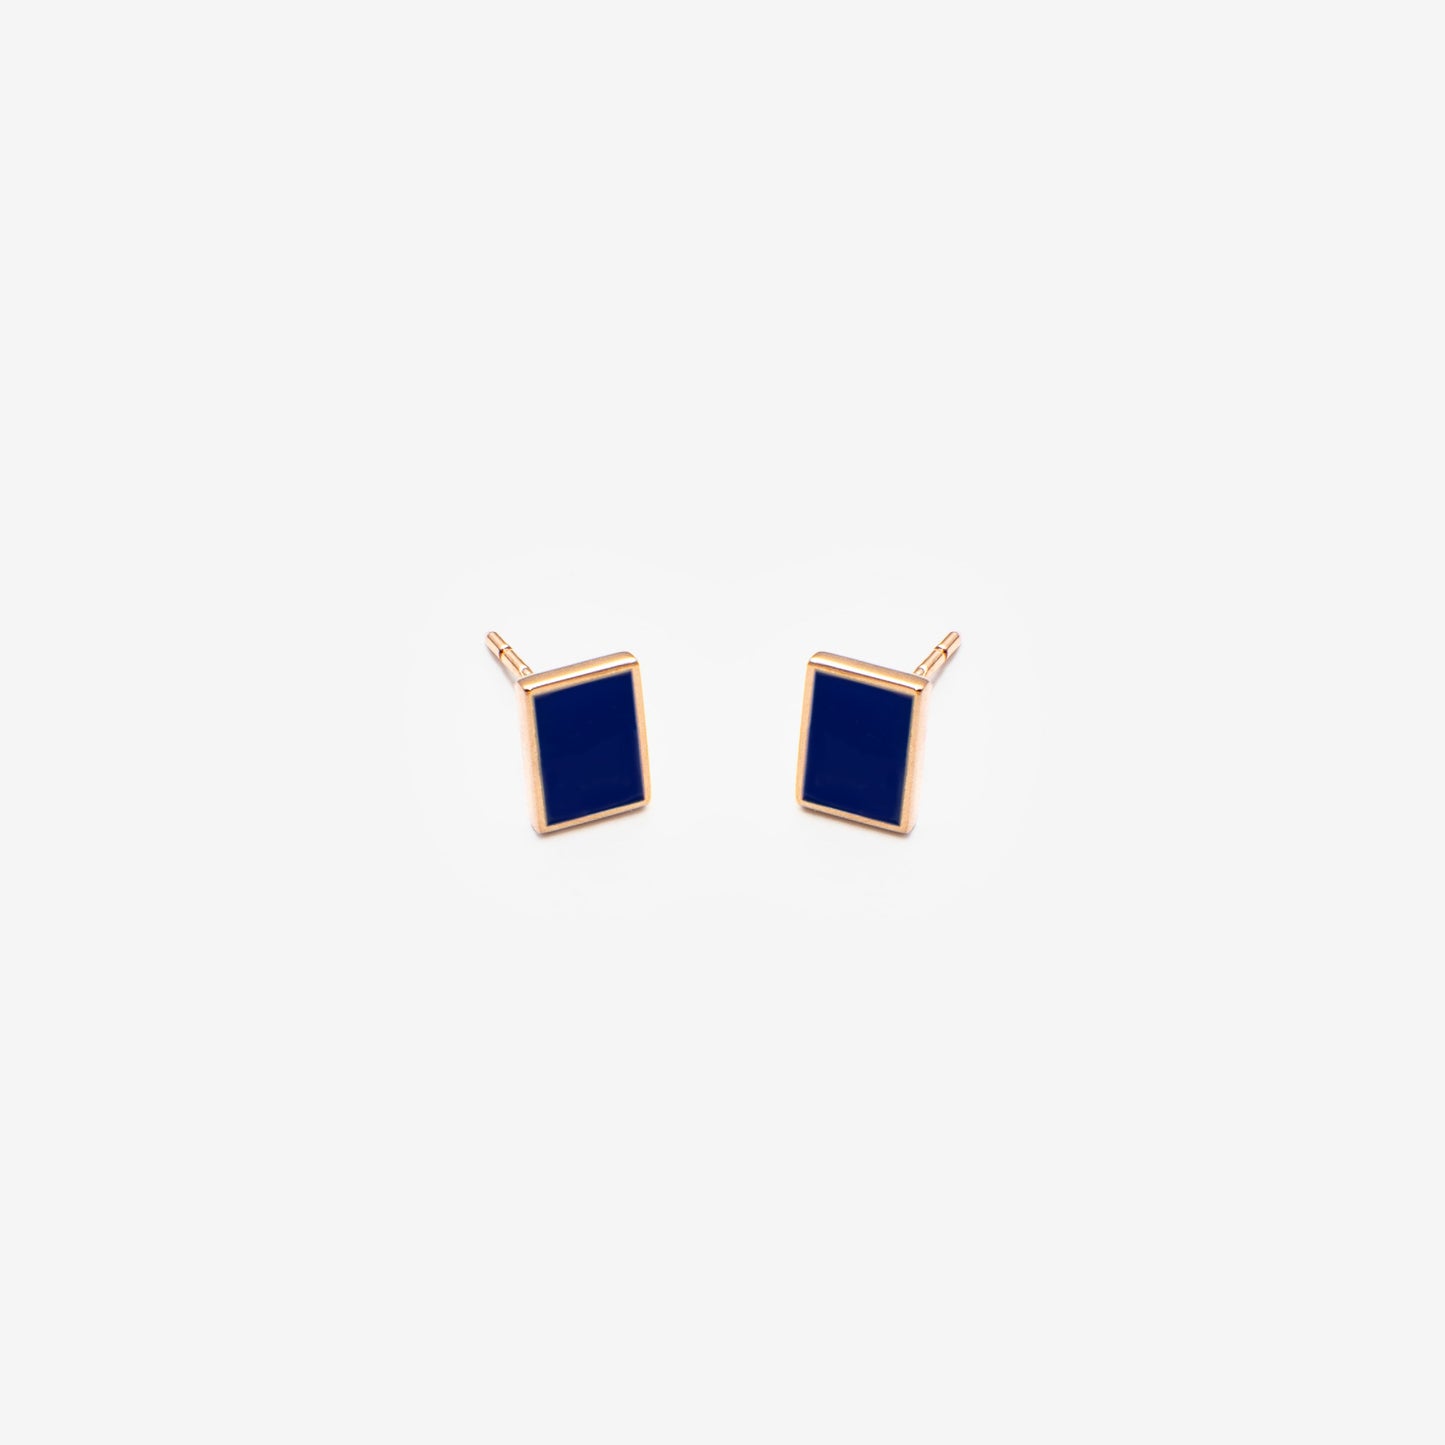 Floating rectangle dark blue earrings